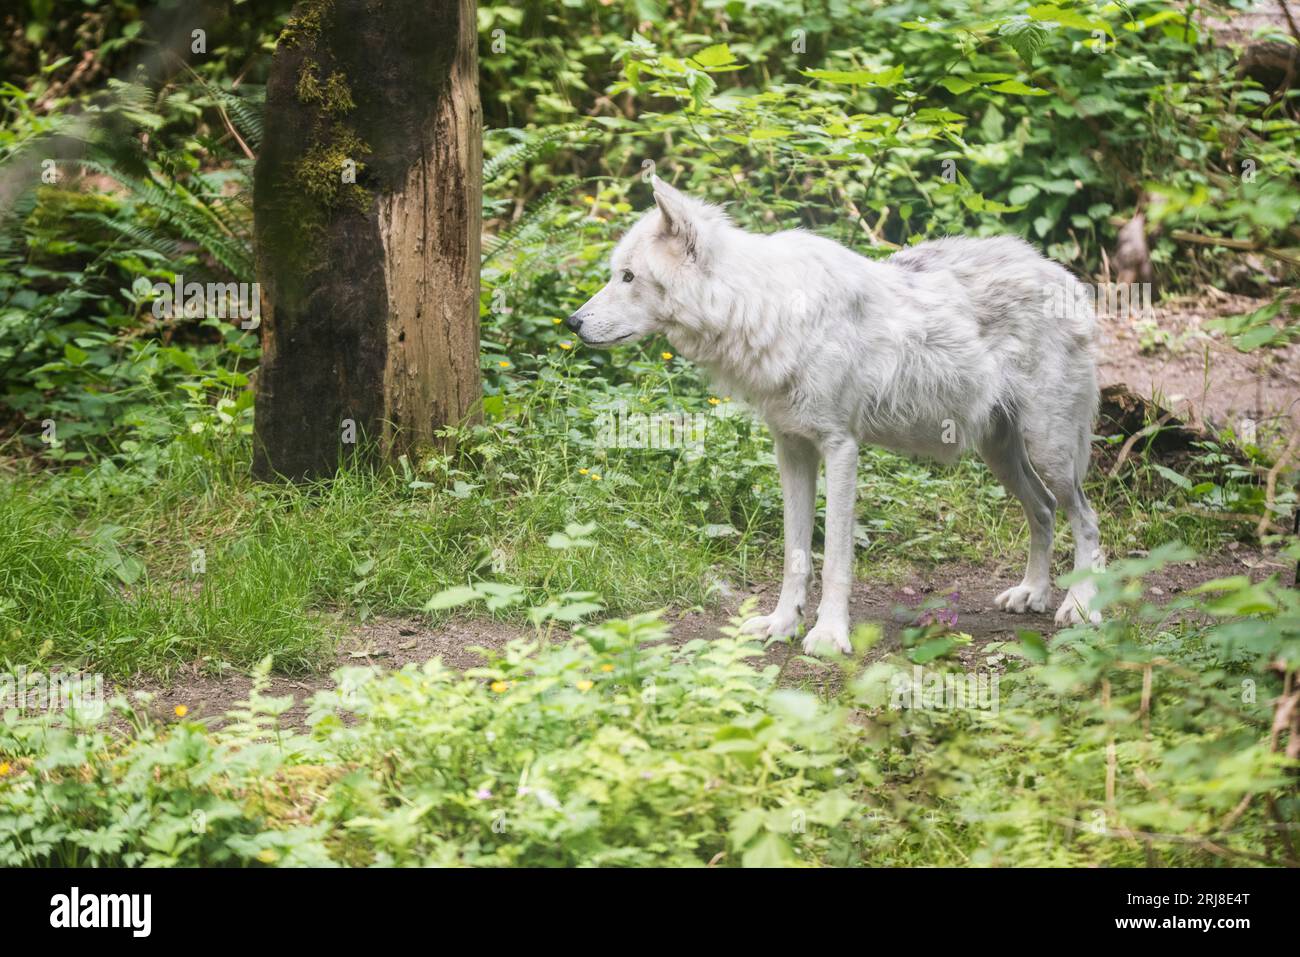 A captive white wolf standing/walking in a large enclosure, habitat included, northwest trek, graham, washington, usa Stock Photo